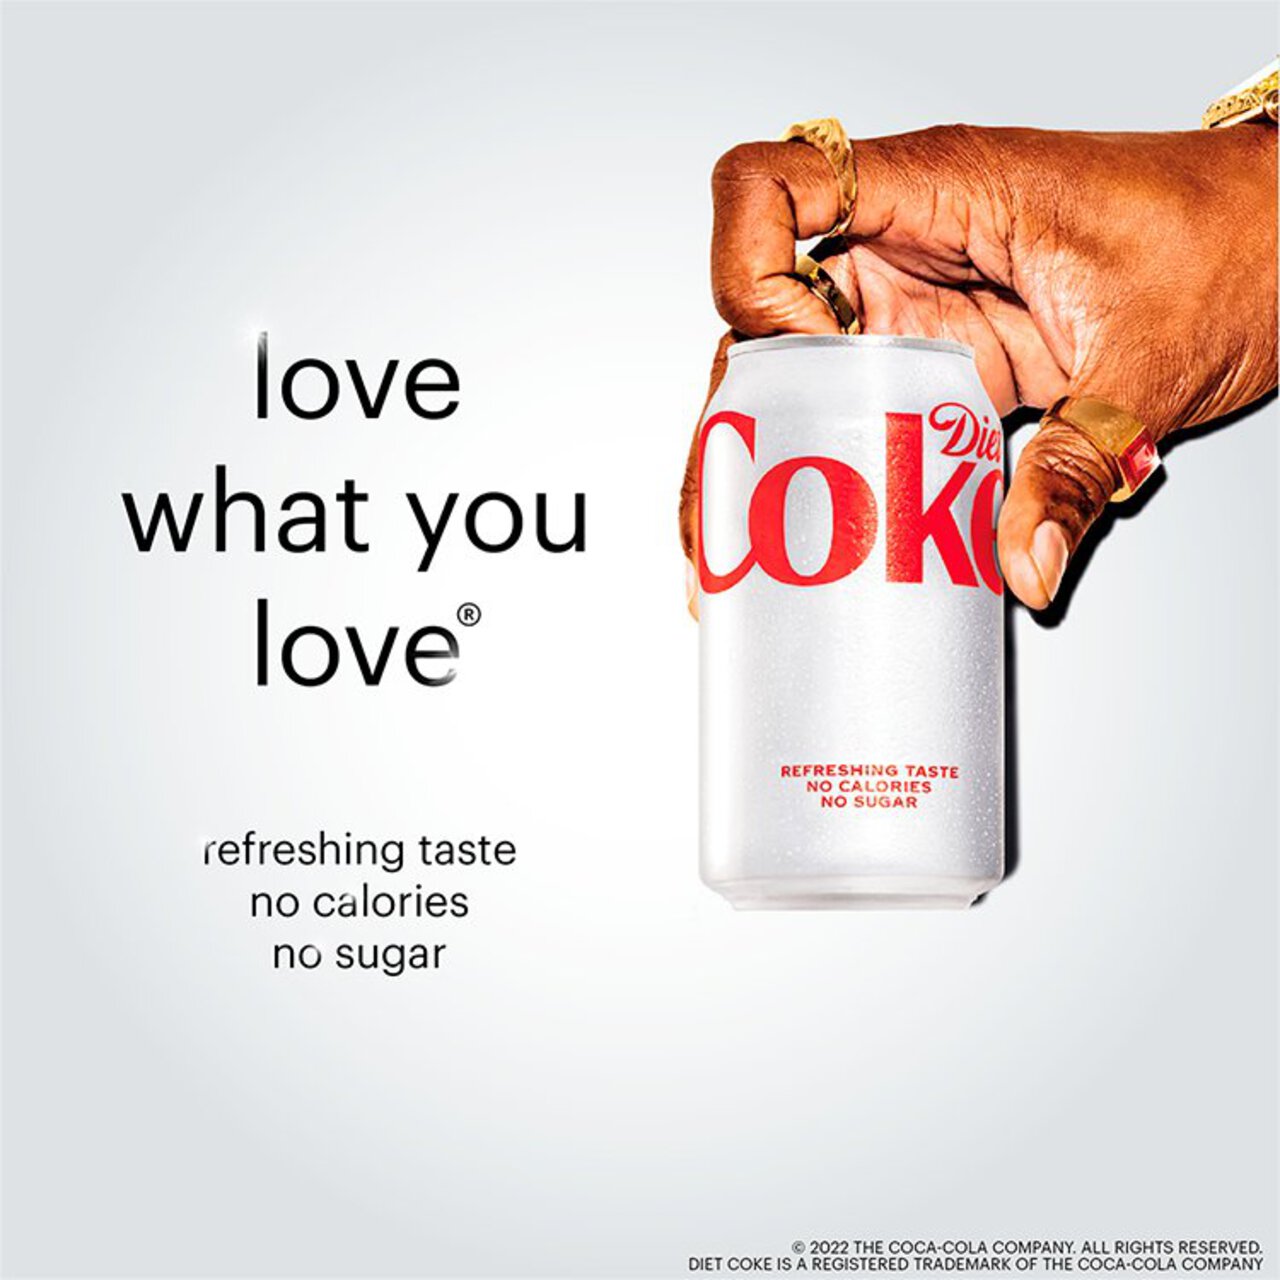 Diet Coke 4 x 330ml